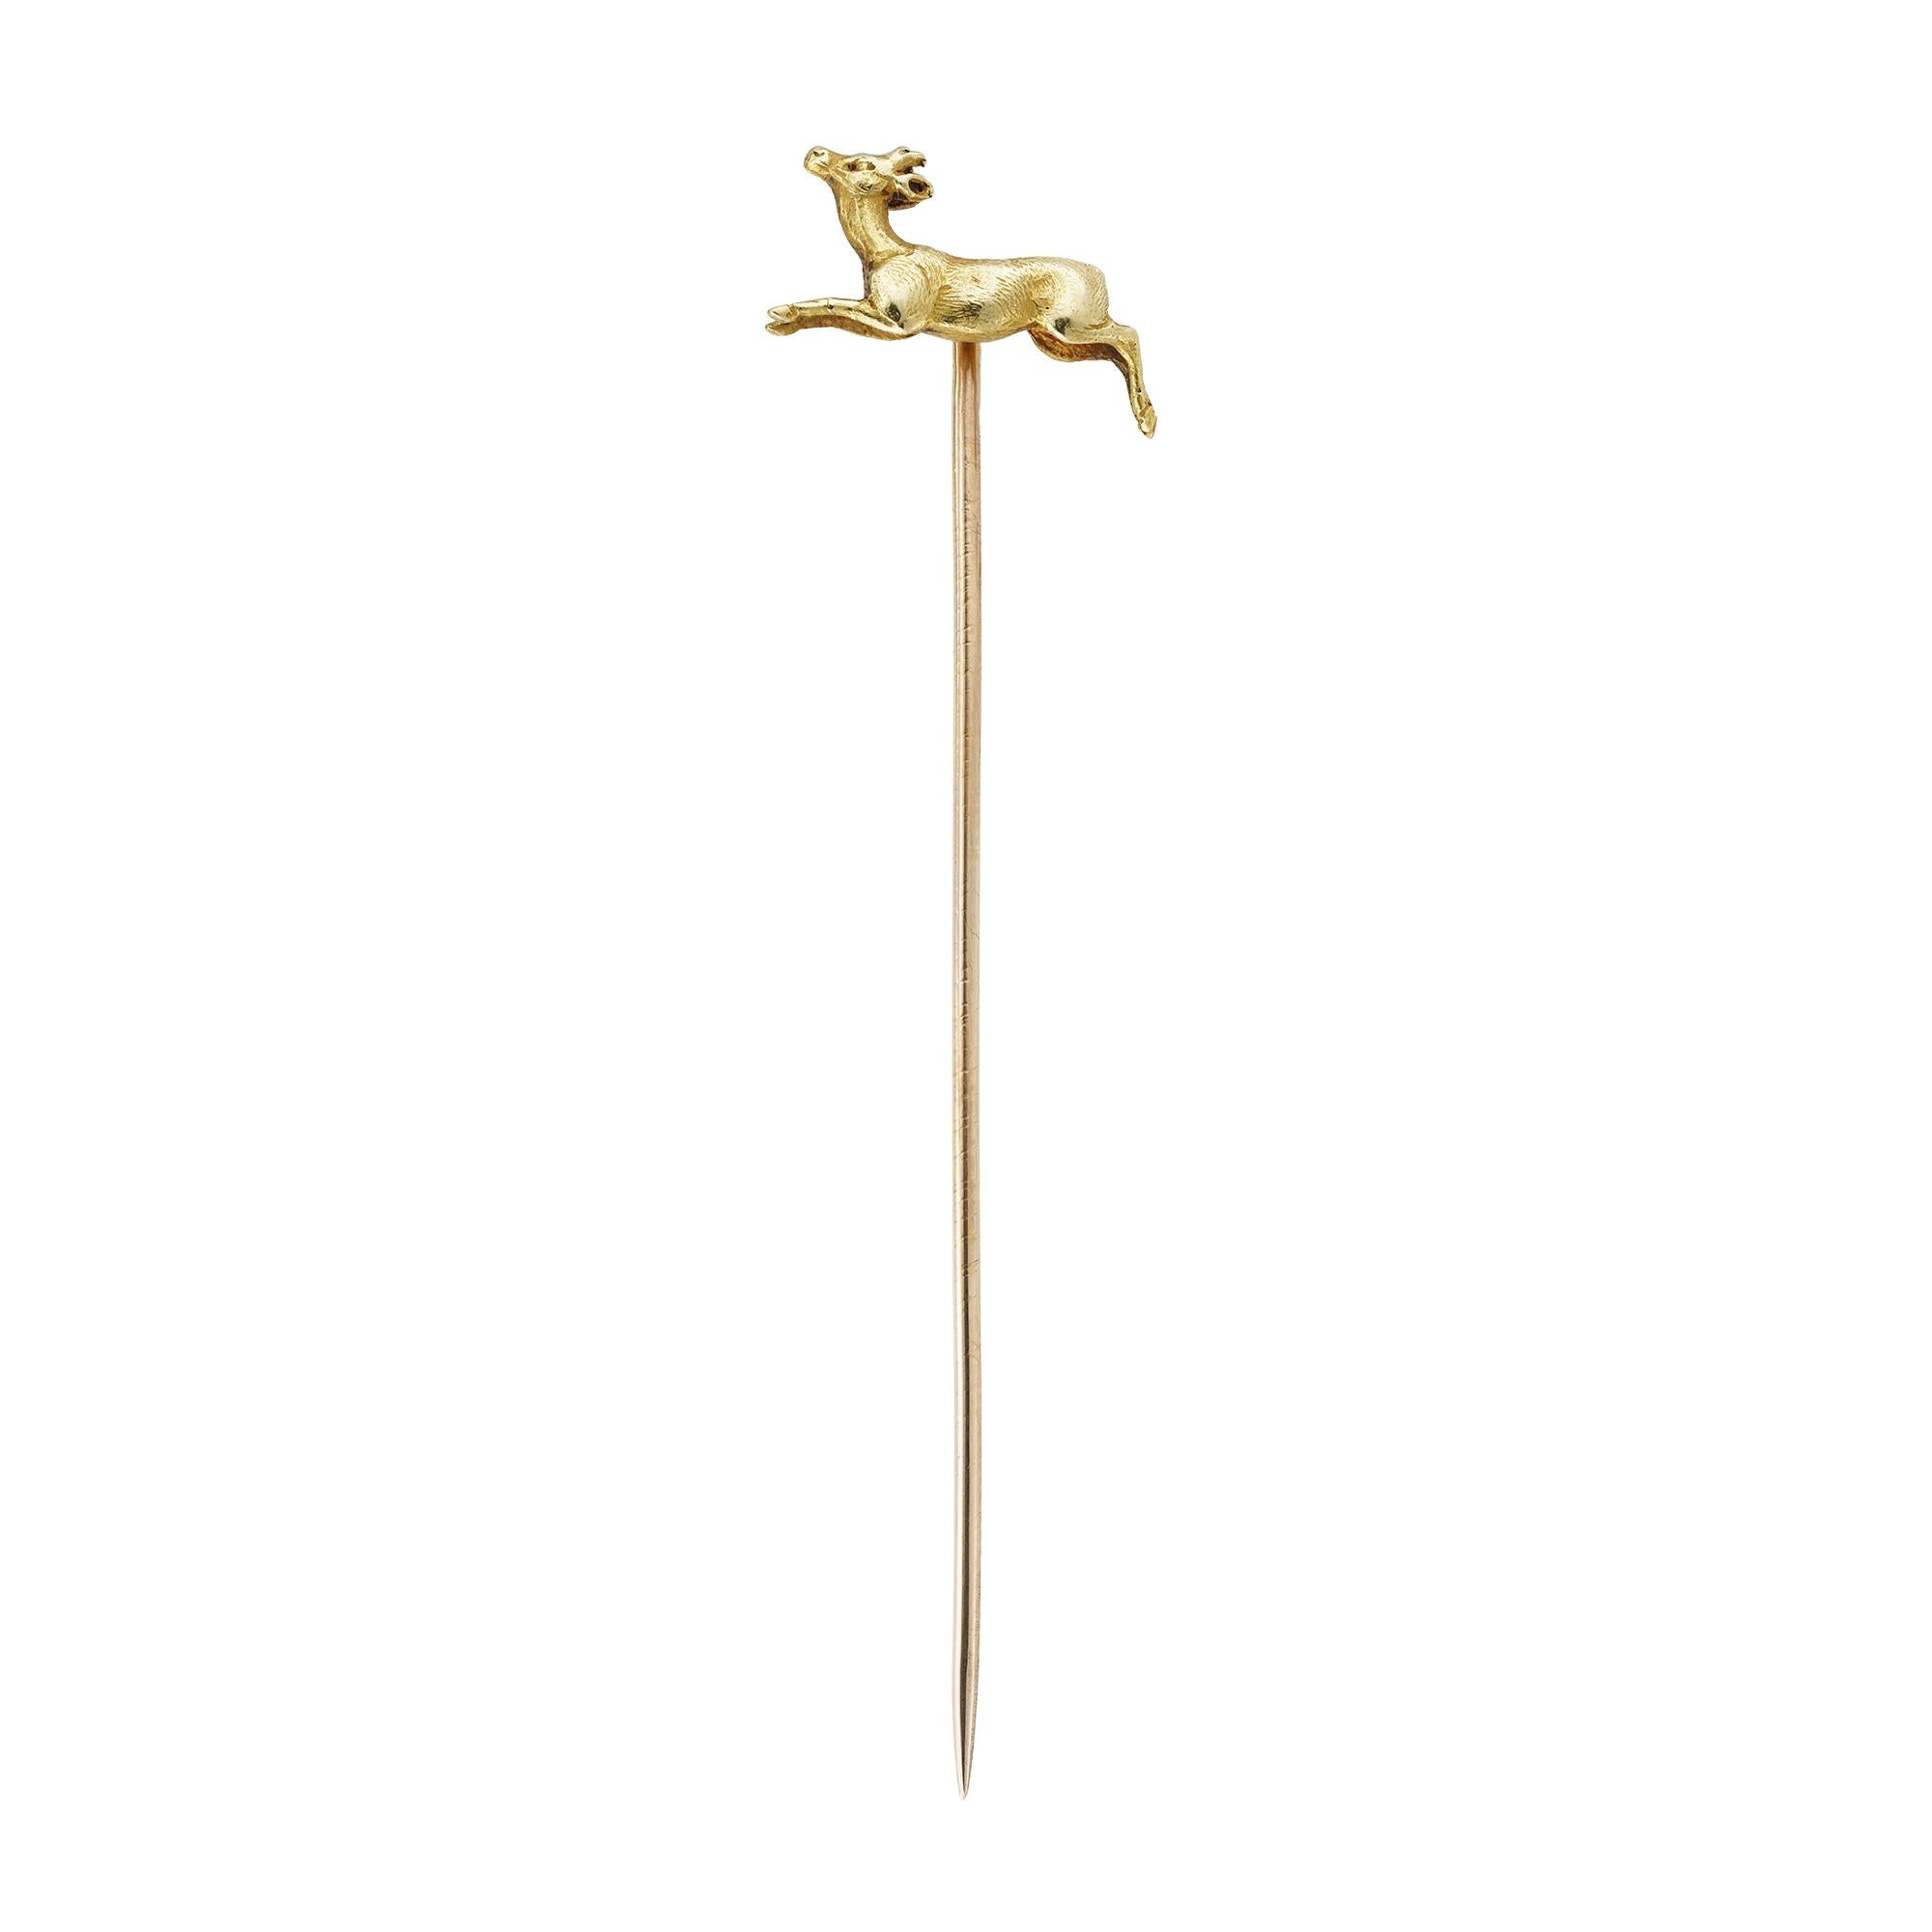 Eine goldene Bocksnadel der Belle Époque, der realistisch geschnitzte Bock ist an einer goldenen Nadel befestigt, mit goldener Adlermarke und undeutlicher Herstellermarke, um 1900, die Ricke misst etwa 1,7 x 1,2 cm, die Nadel ist 6,3 cm lang,